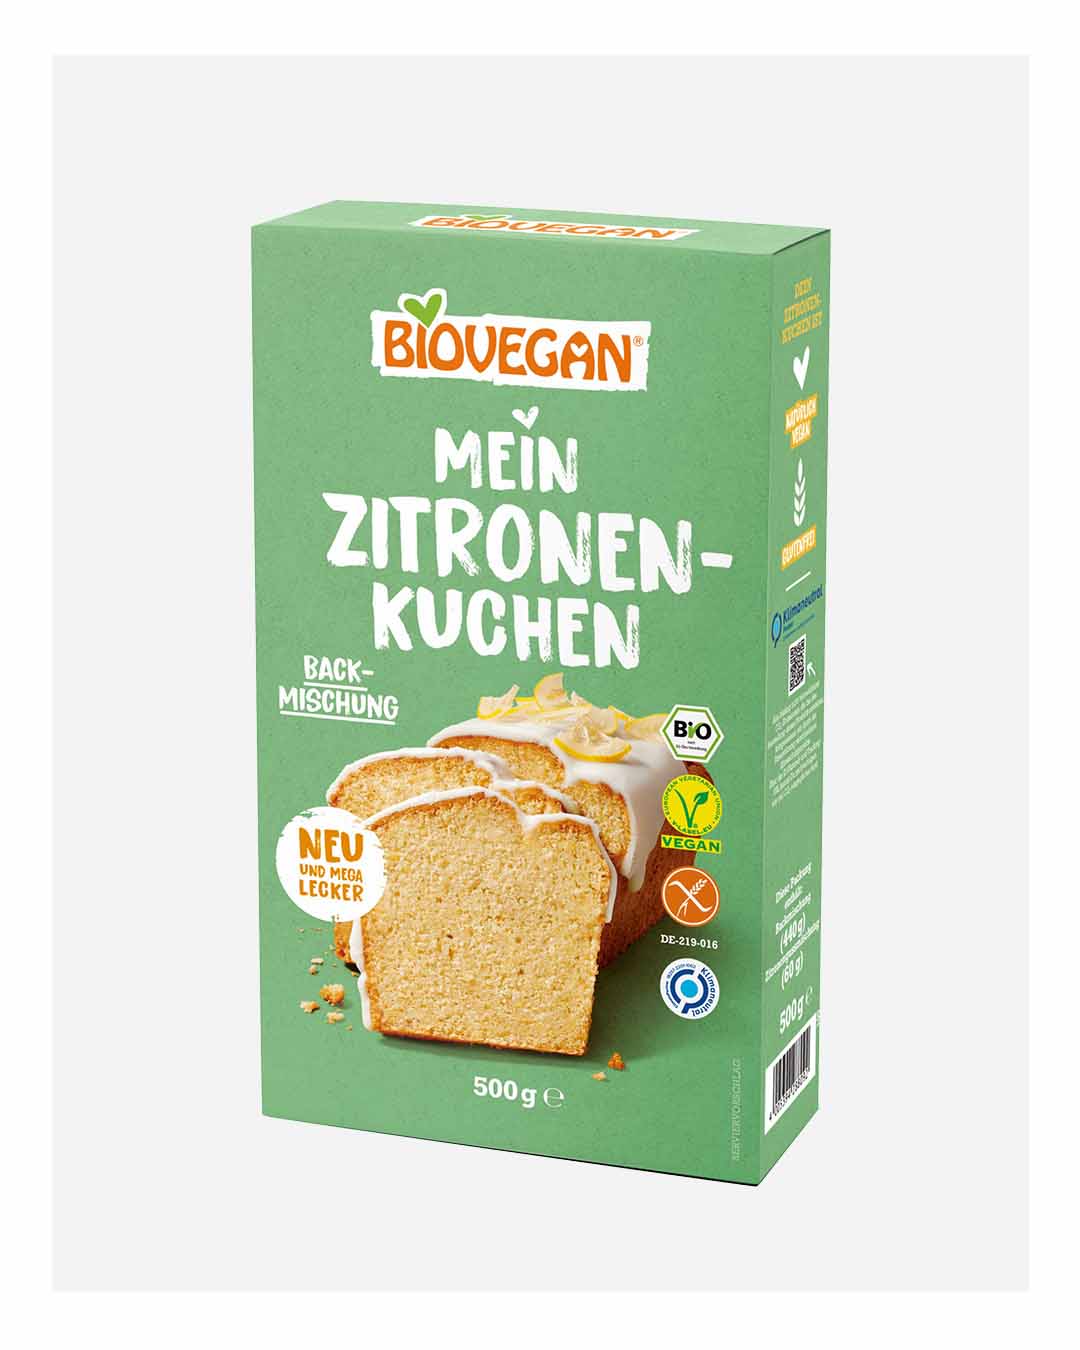 Moderne Foodfotografie für Verpackungen von Backmischungen Fotostudio für Werbefotografie im Rheinland bei Koblenz zwischen Köln und Frankfurt